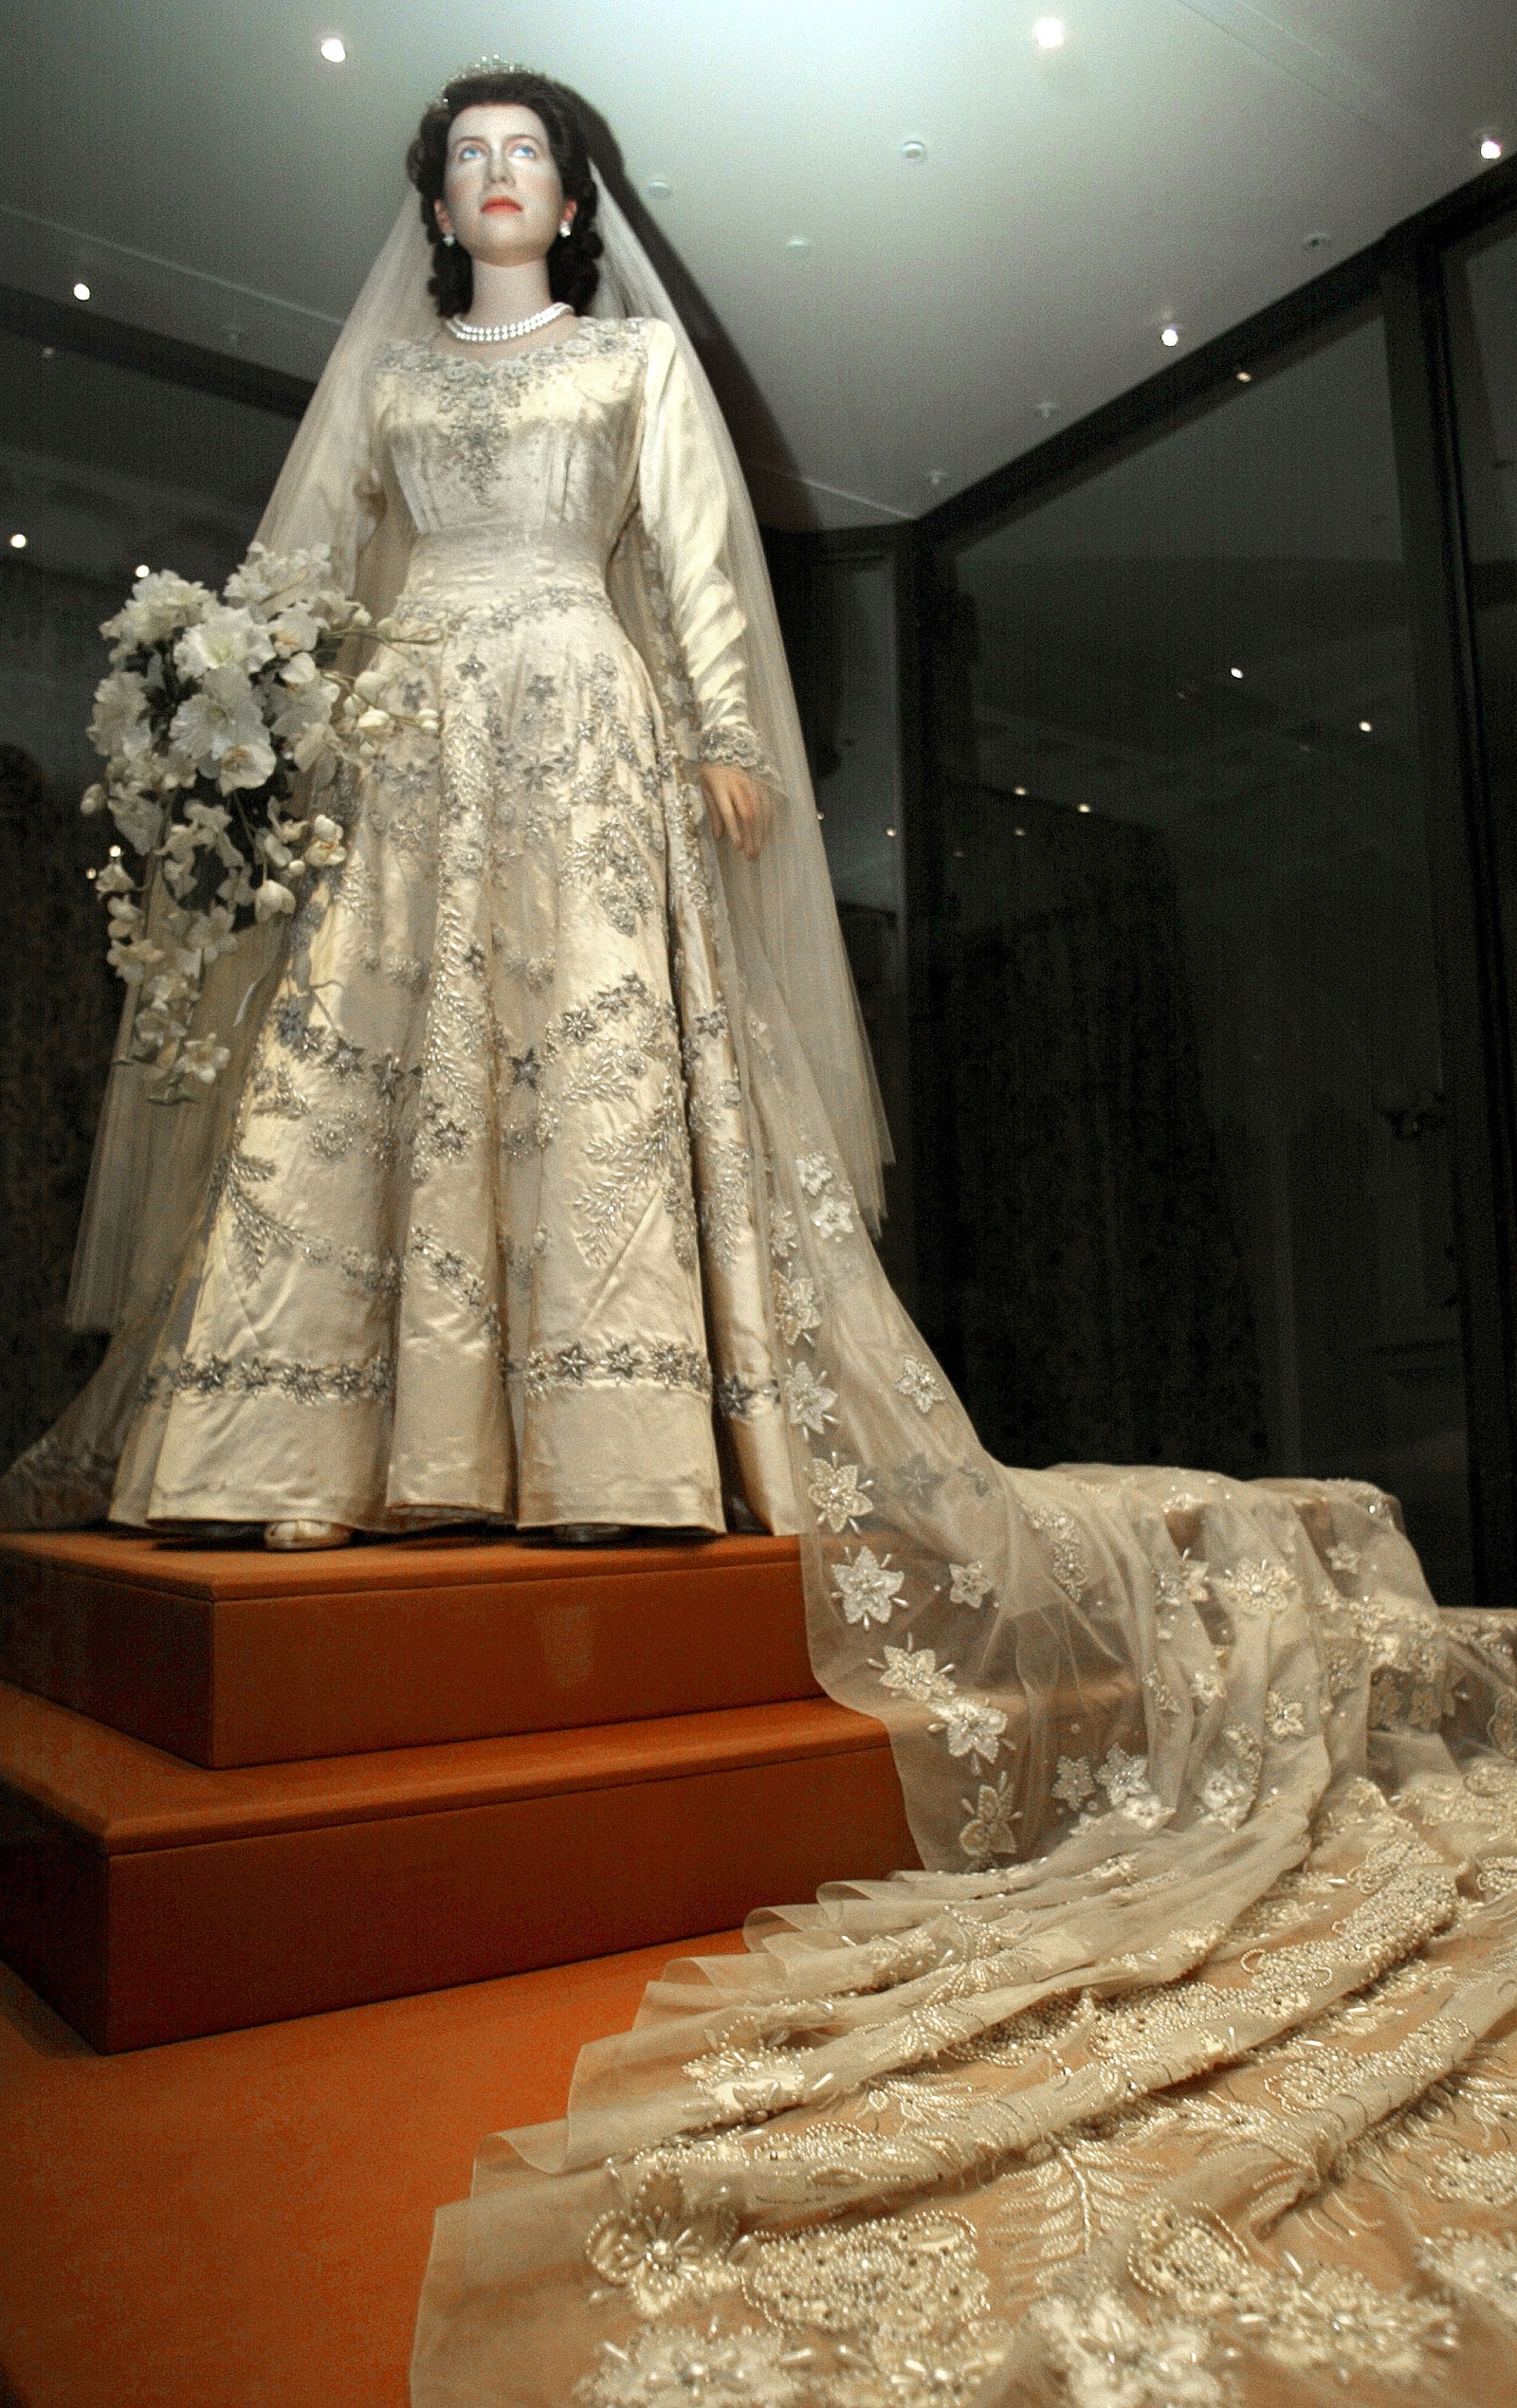 Свадебное платье принцессы Елизаветы на выставке A Century of Queens' Wedding Dresses 18401947 в Кенсингтонском дворце...